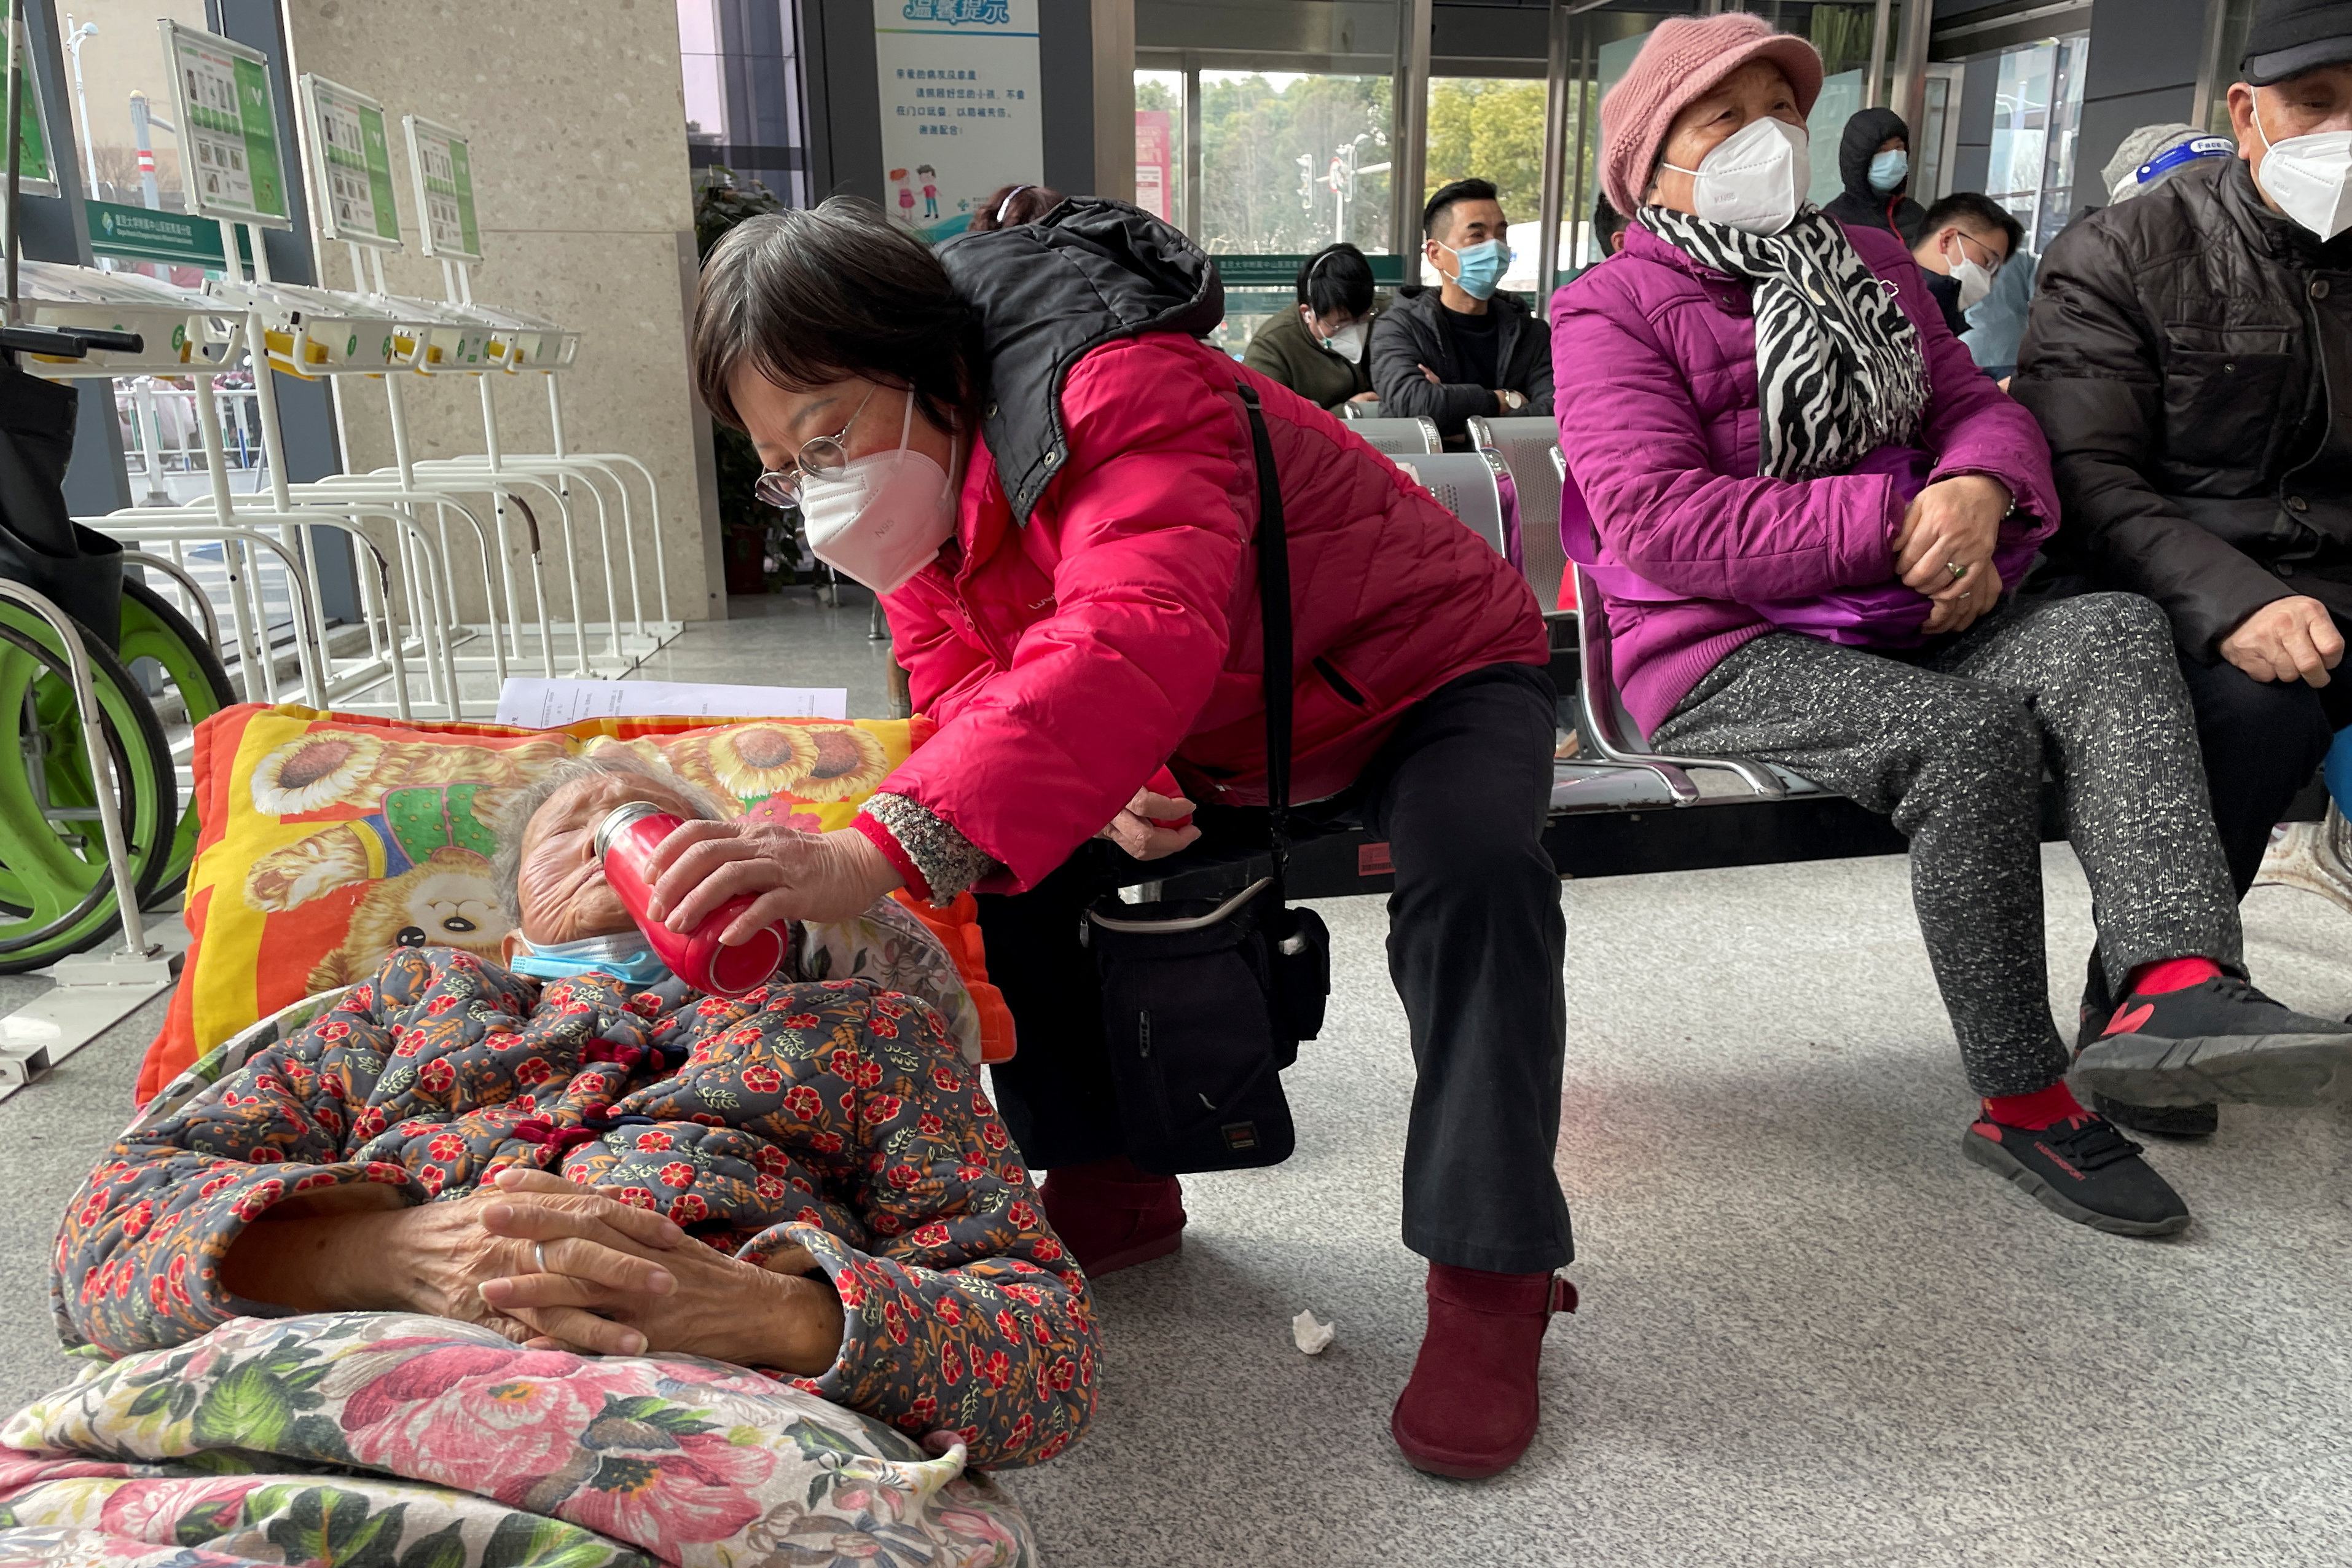 Una mujer le da de beber a un anciano acostado en una camilla mientras espera en el departamento de emergencias de un hospital, en medio del brote de la enfermedad por coronavirus (COVID-19) en China